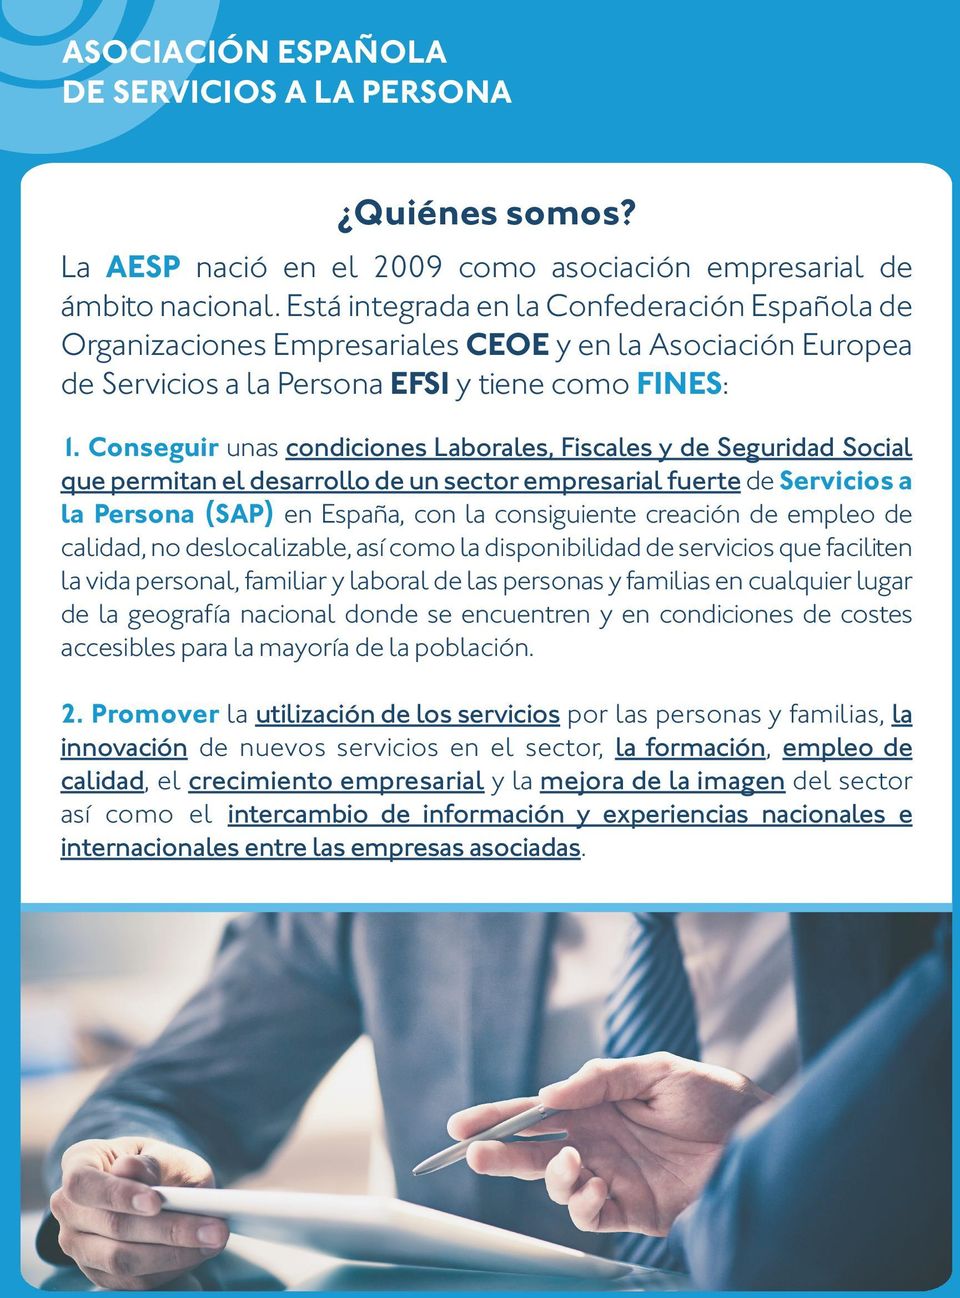 Conseguir unas condiciones Laborales, Fiscales y de Seguridad Social que permitan el desarrollo de un sector empresarial fuerte de Servicios a la Persona (SAP) en España, con la consiguiente creación